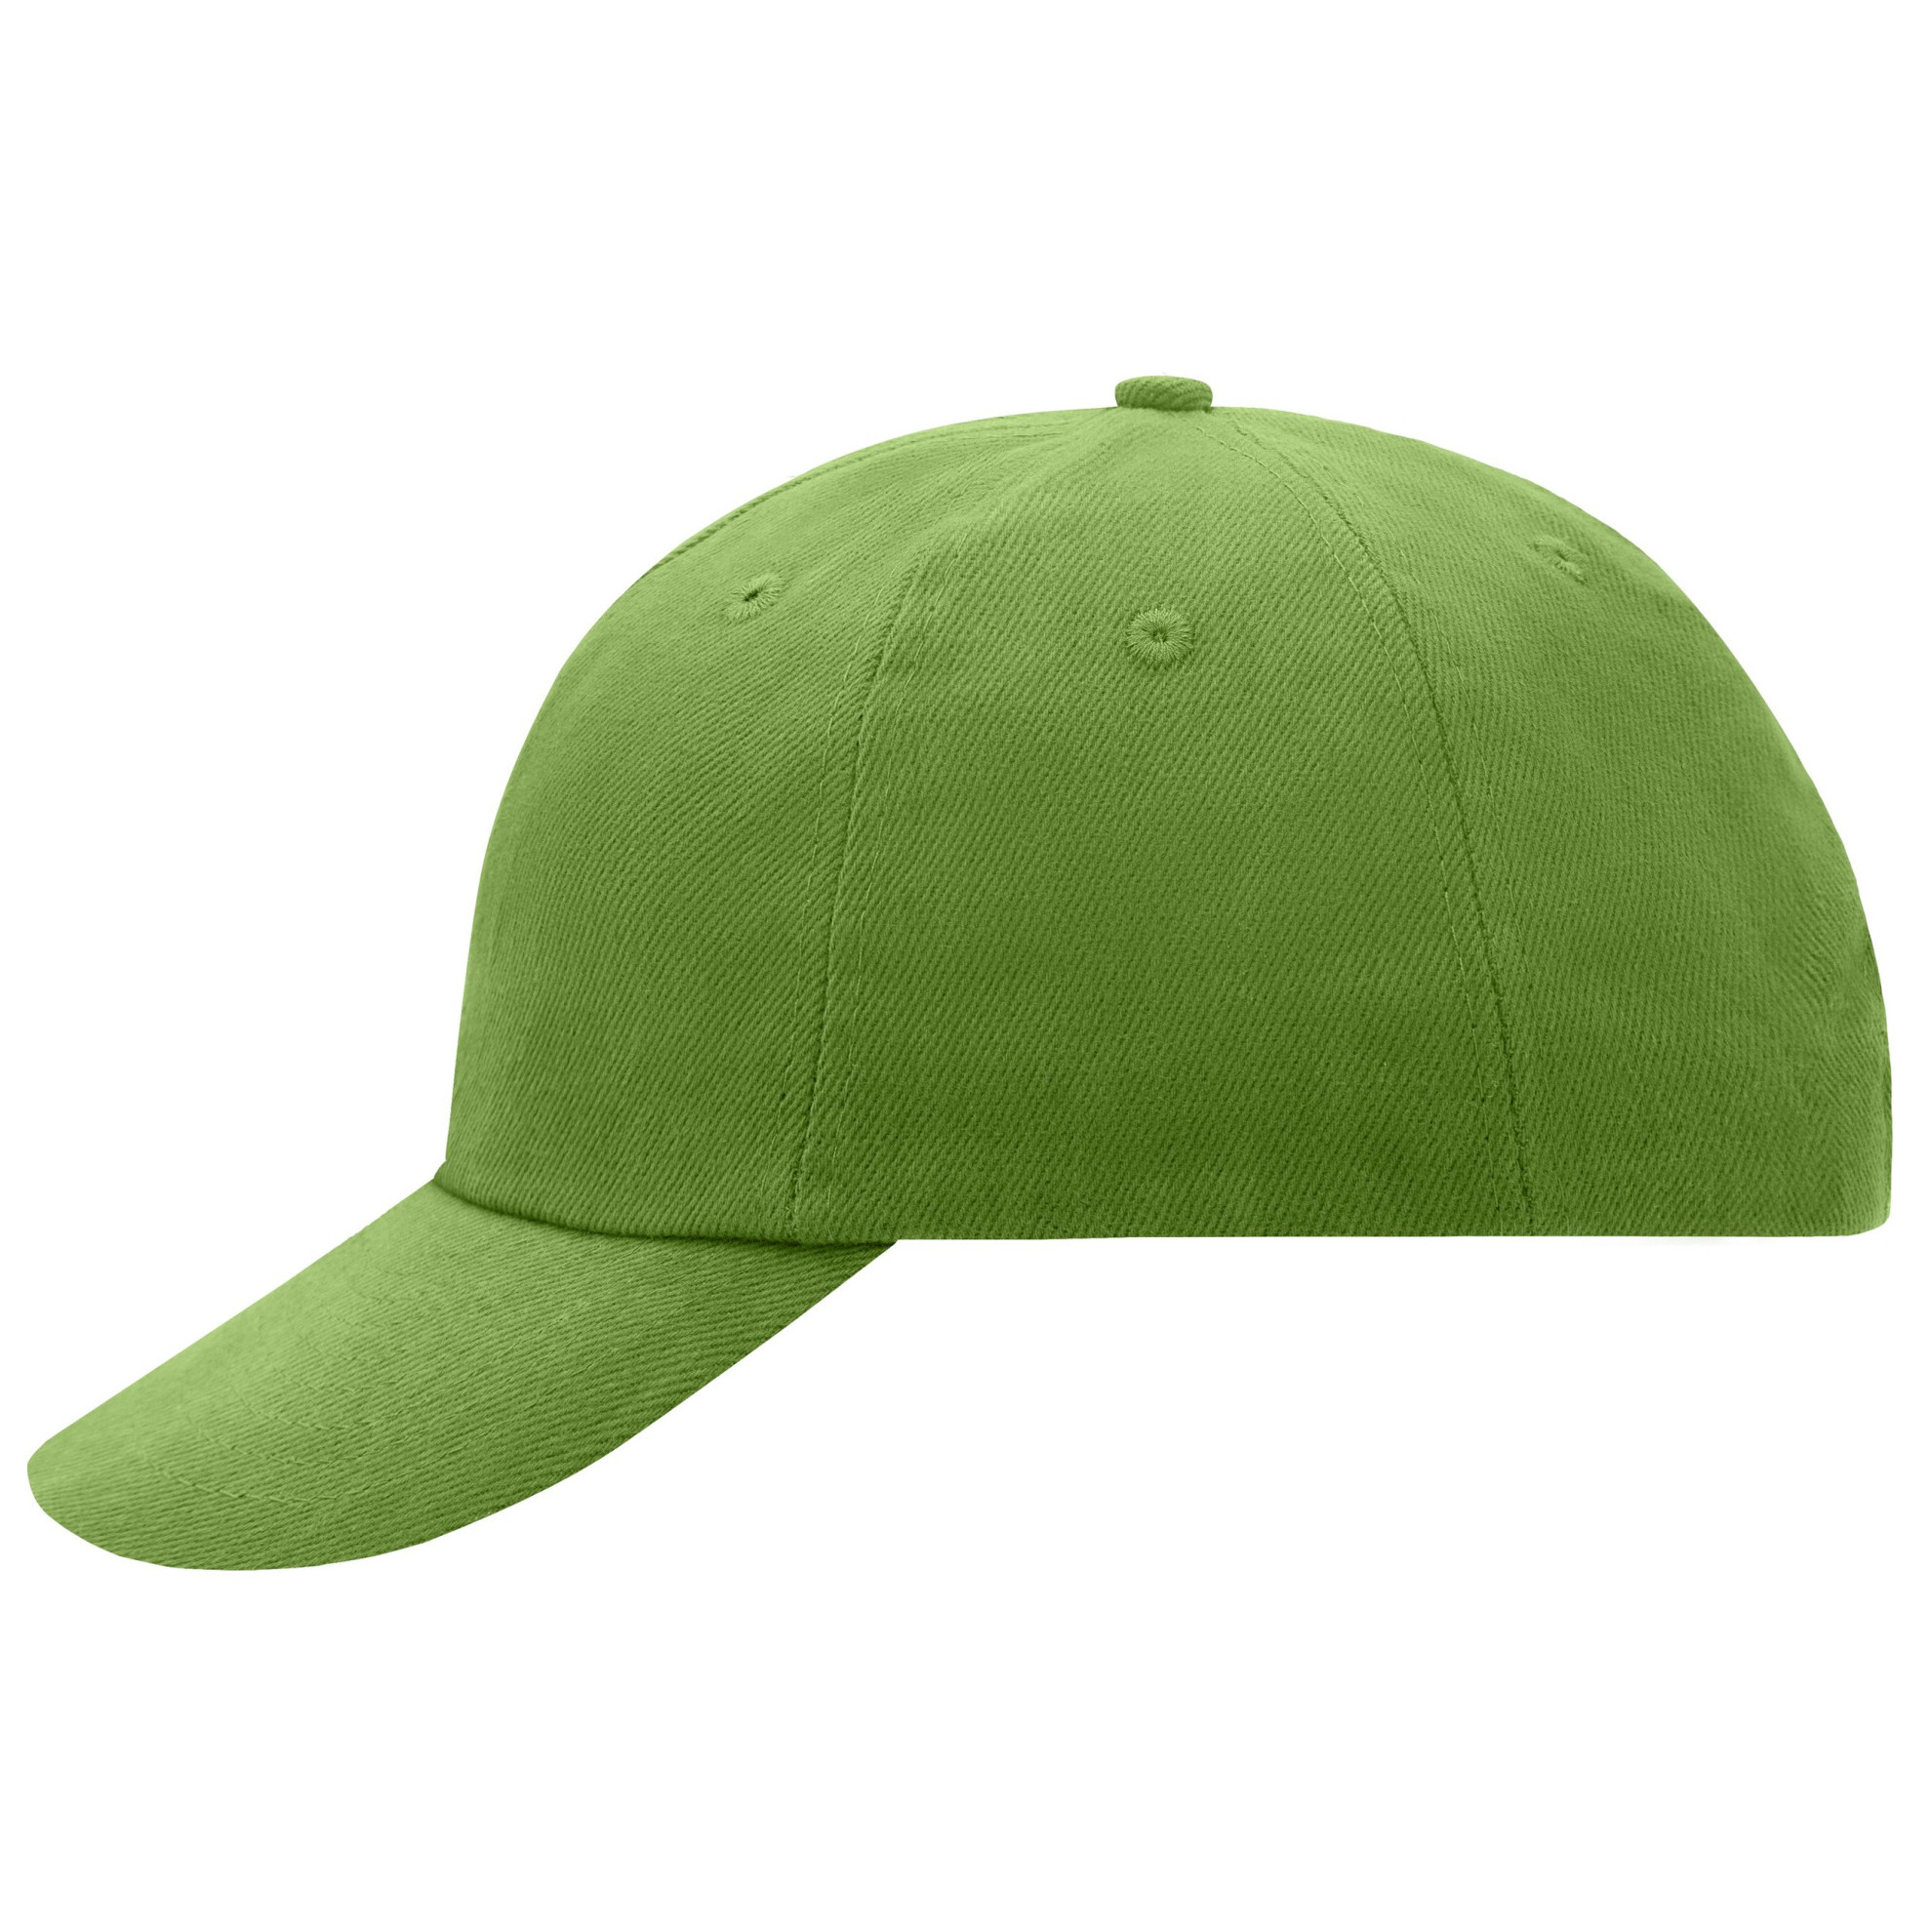 Lime baseballcap voor volwassenen